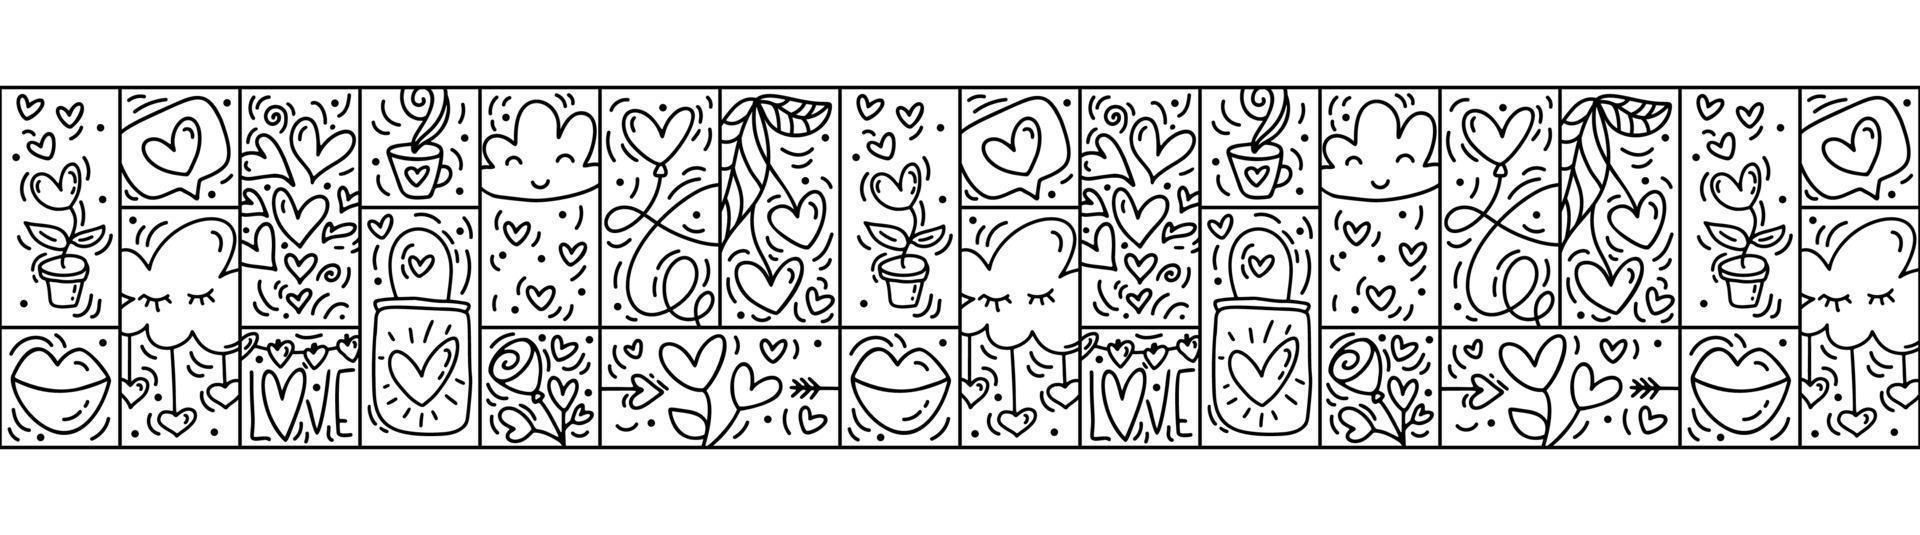 Valentines logo vector cinta washi de patrones sin fisuras frontera amor, pastel, labios, corazón, nube y bolsa. constructor monoline dibujado a mano para tarjeta de felicitación romántica